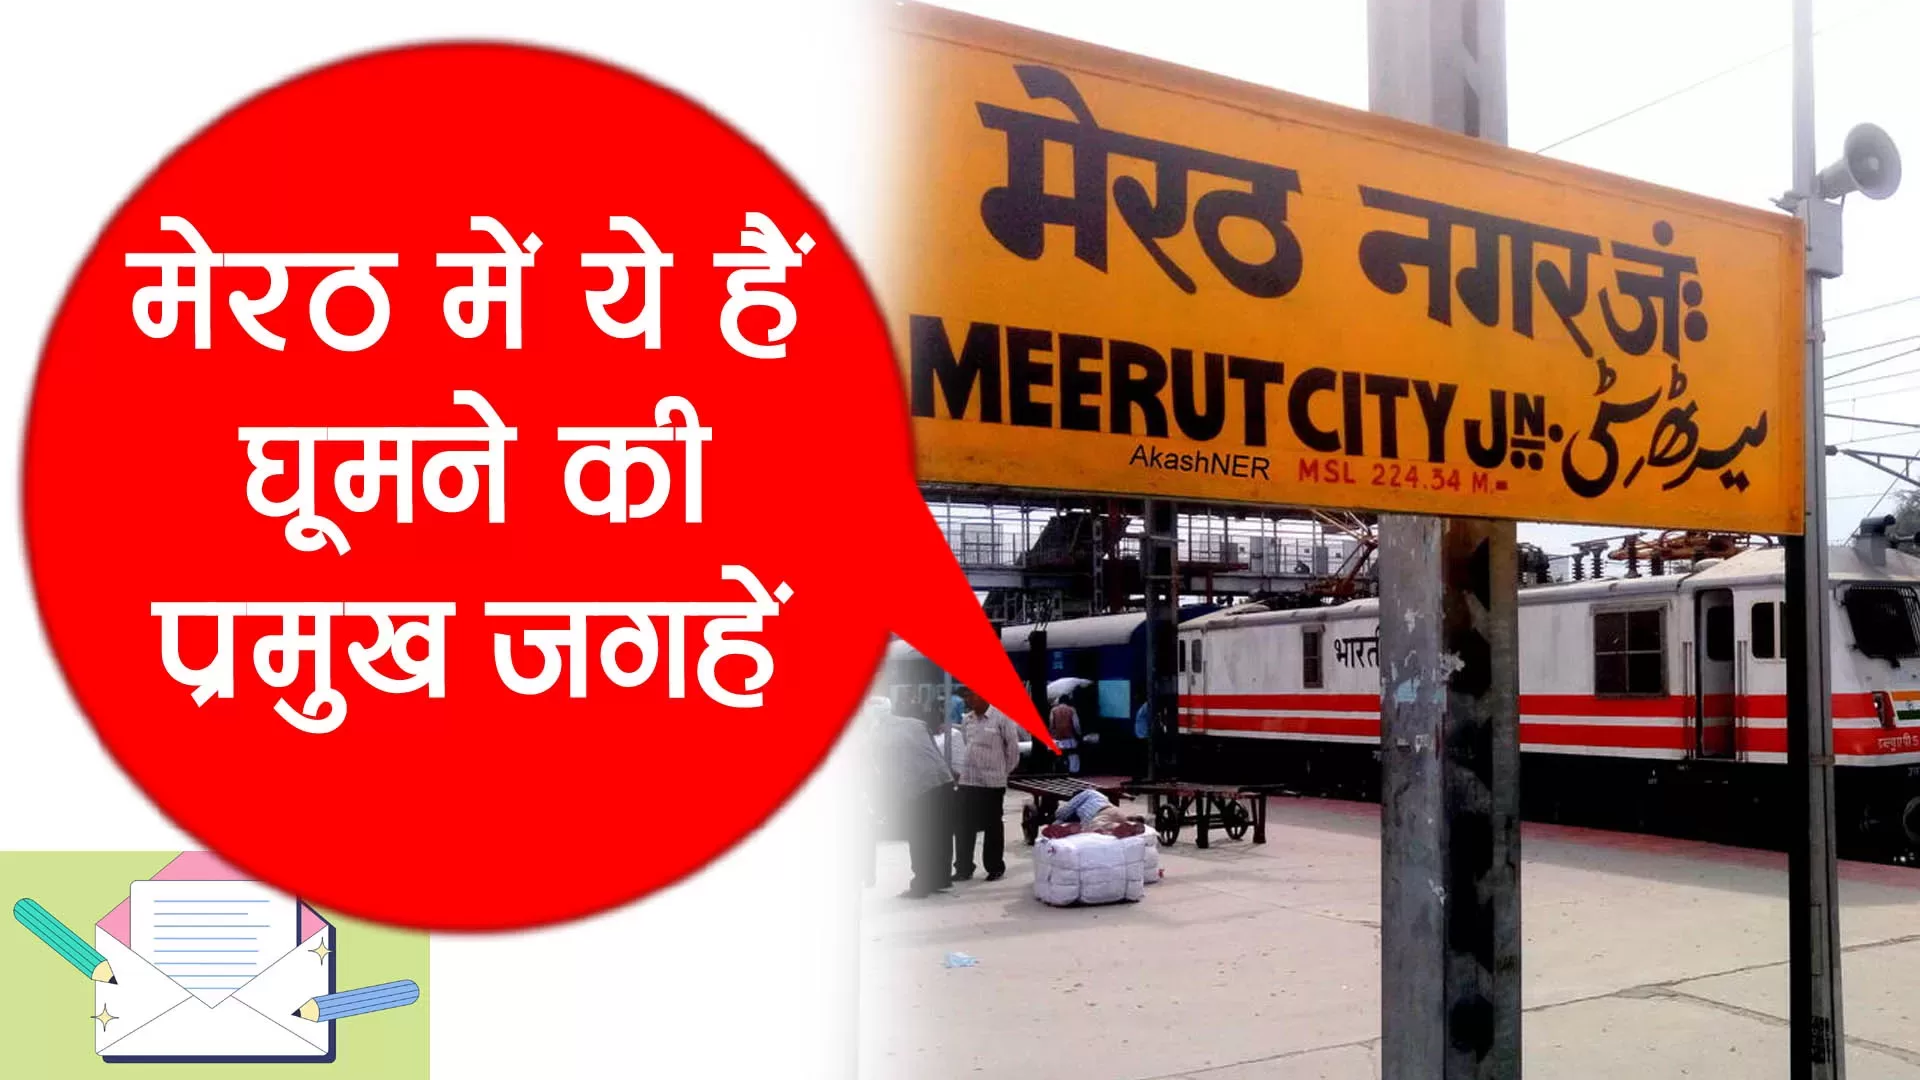 About Meerut in Hindi: जानें मेरठ का इतिहास और घूमने की जगहों के बारे में